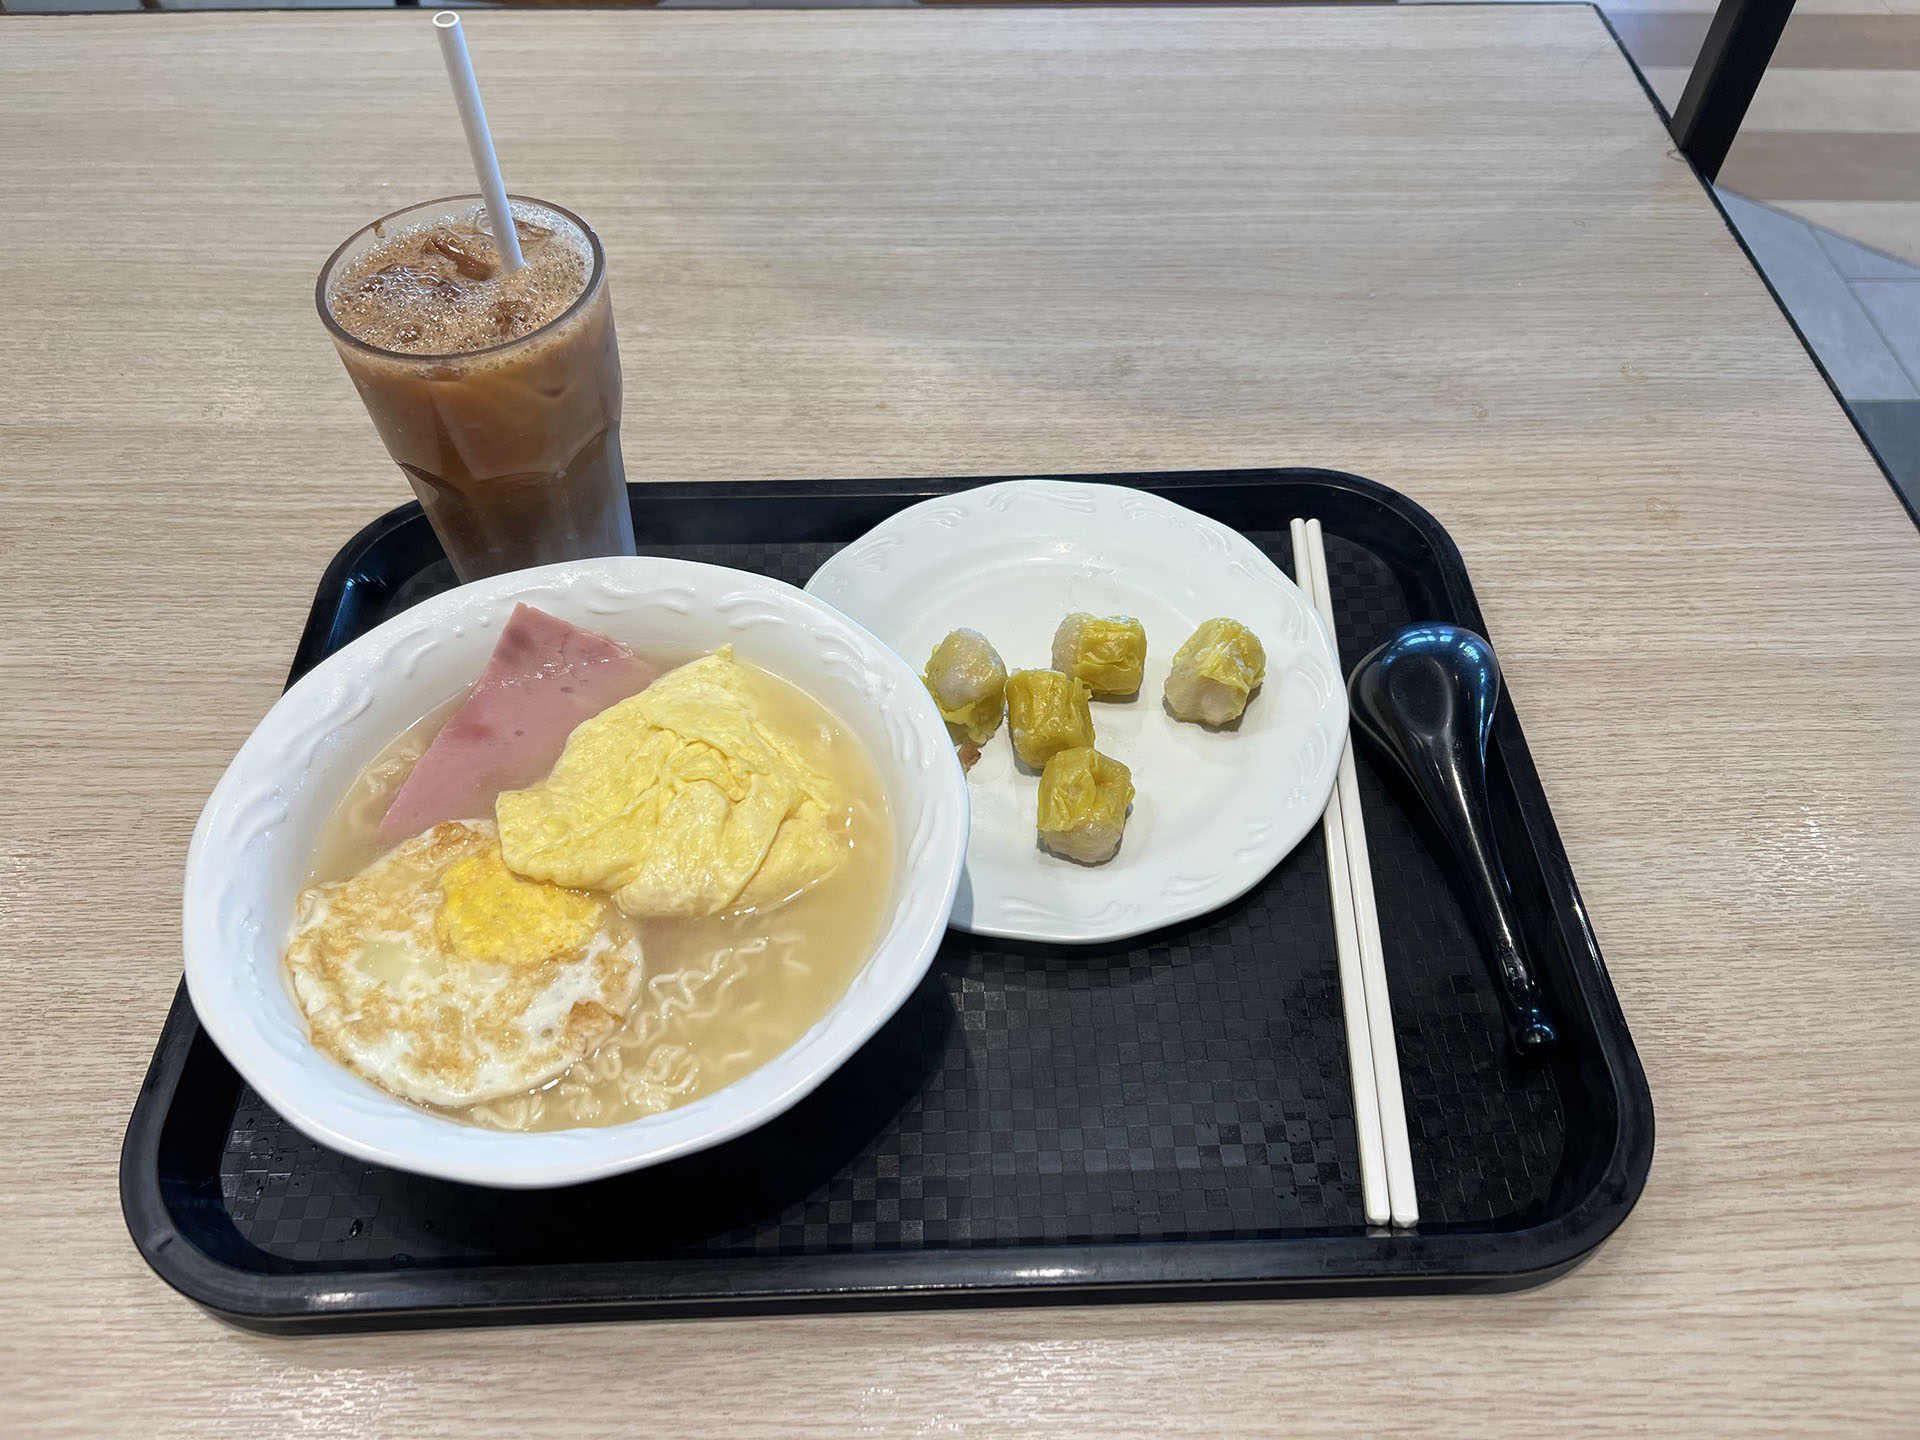 我在HKUST LG1餐厅吃的早餐